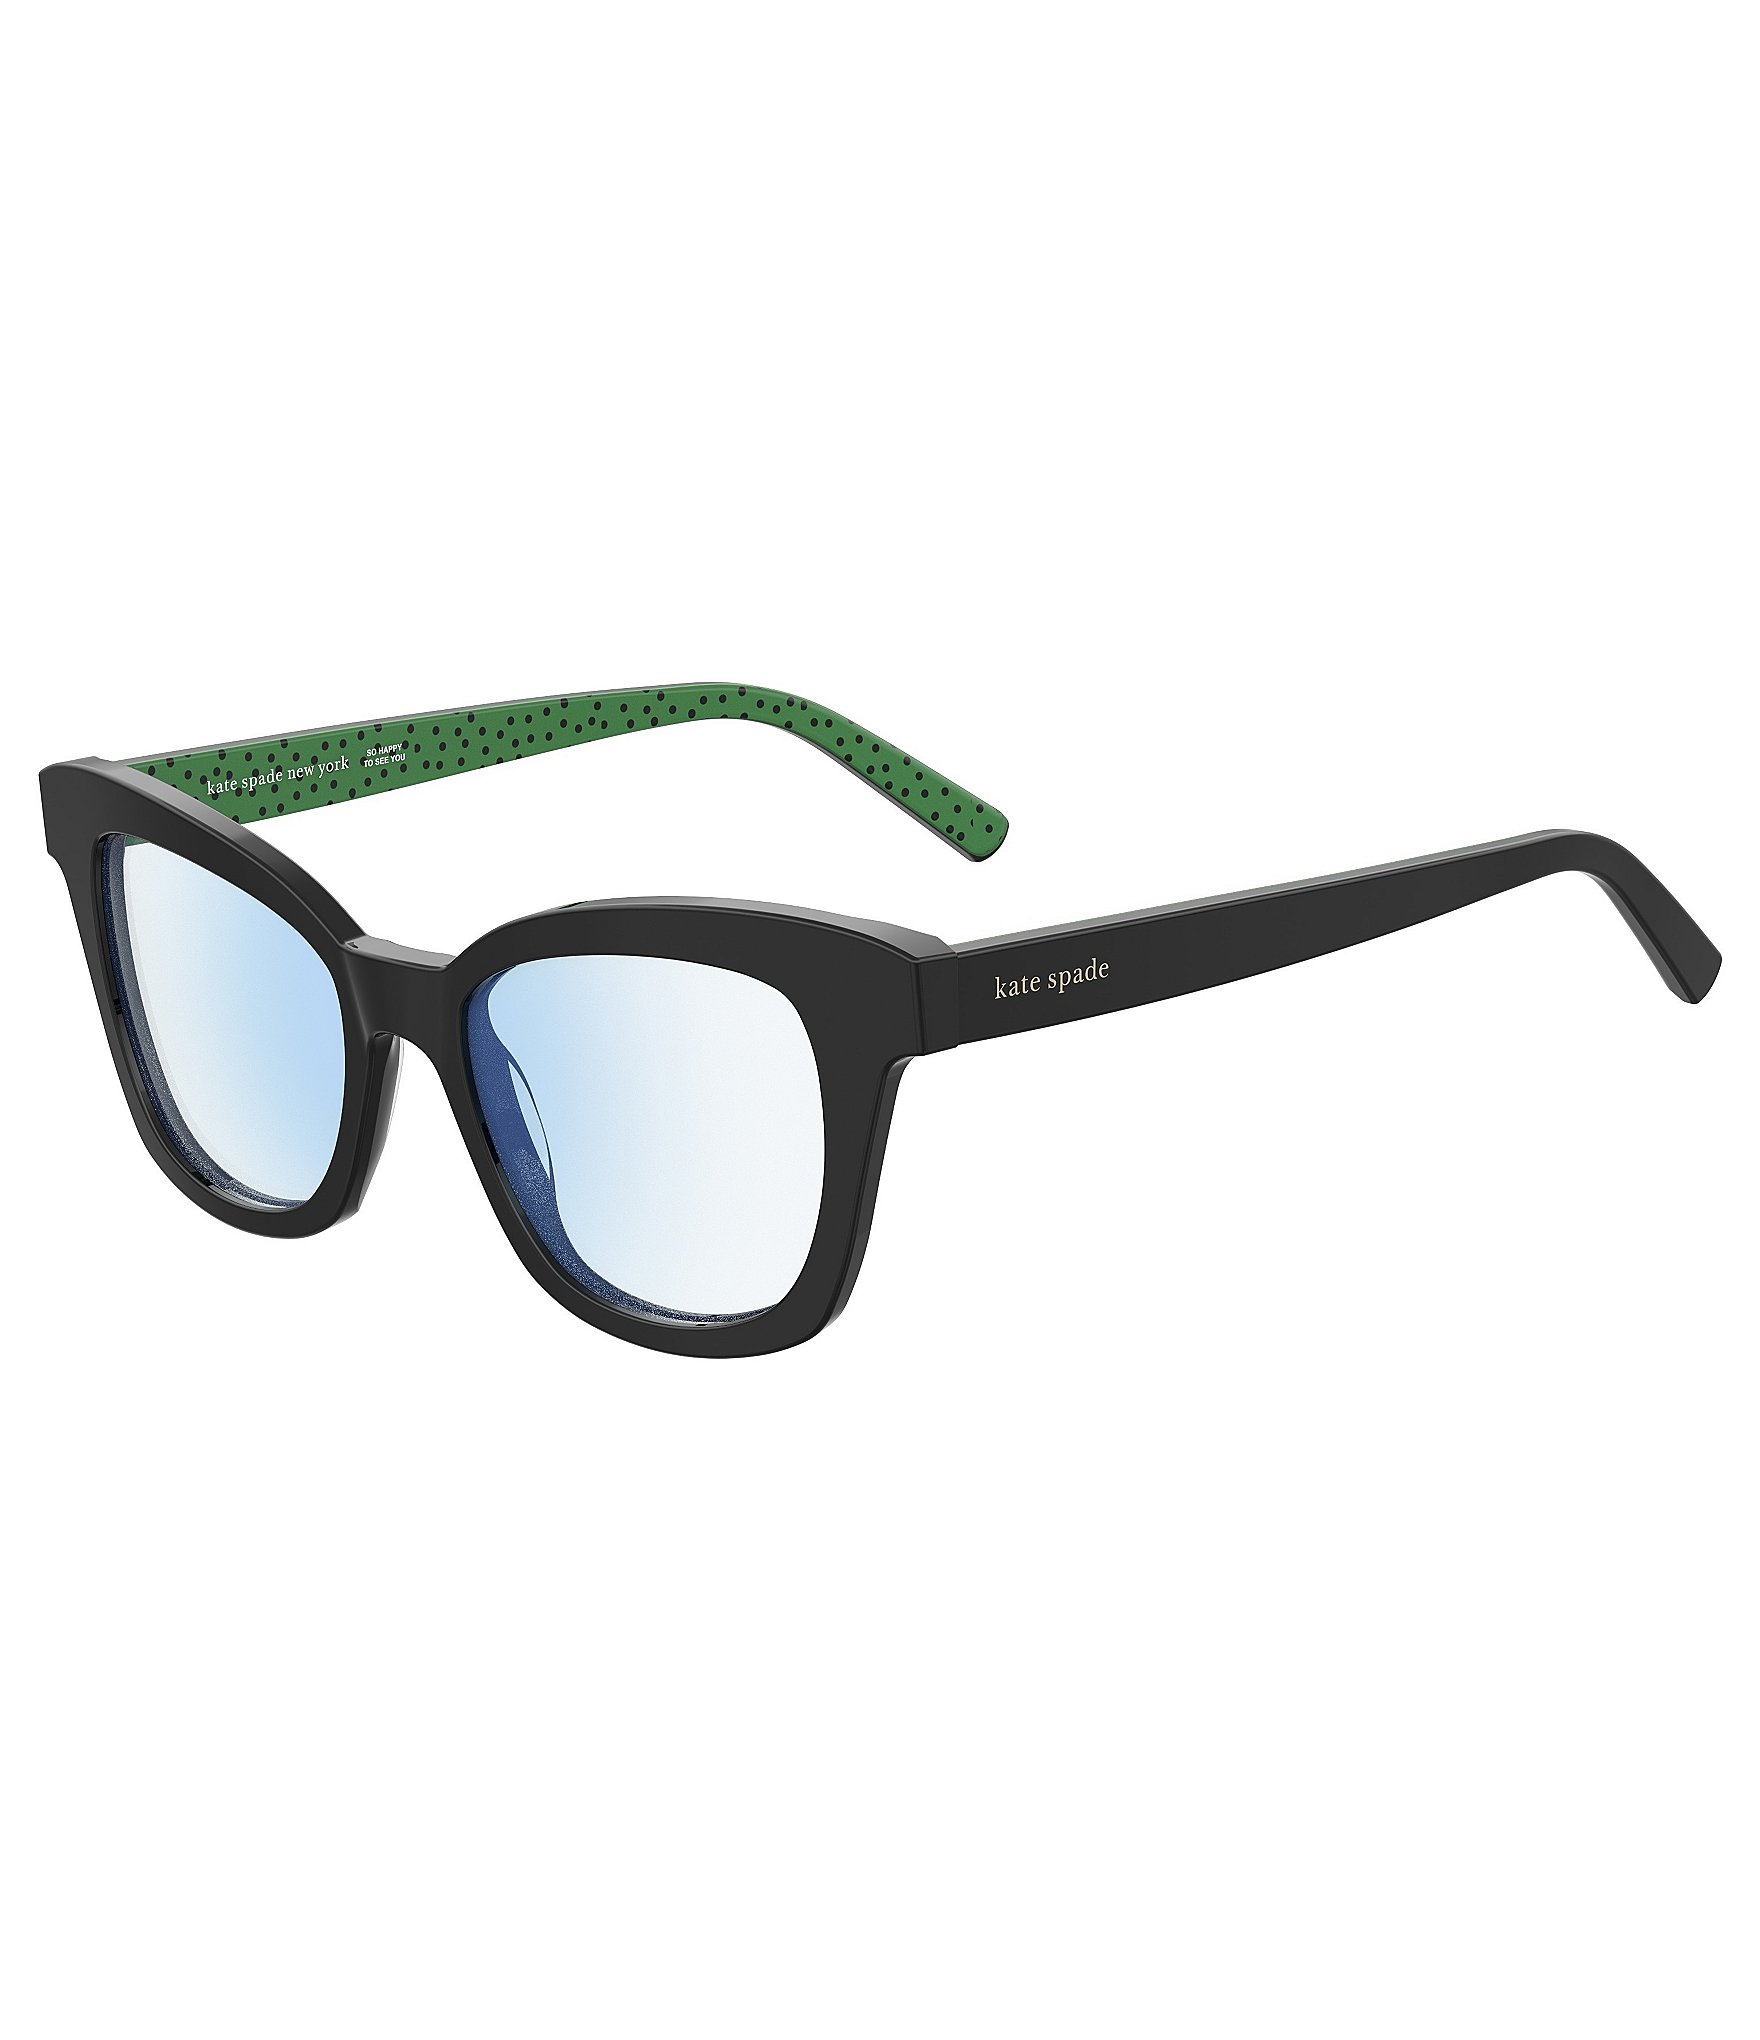 kate spade new york Frazer Square Reader Glasses | Dillard's